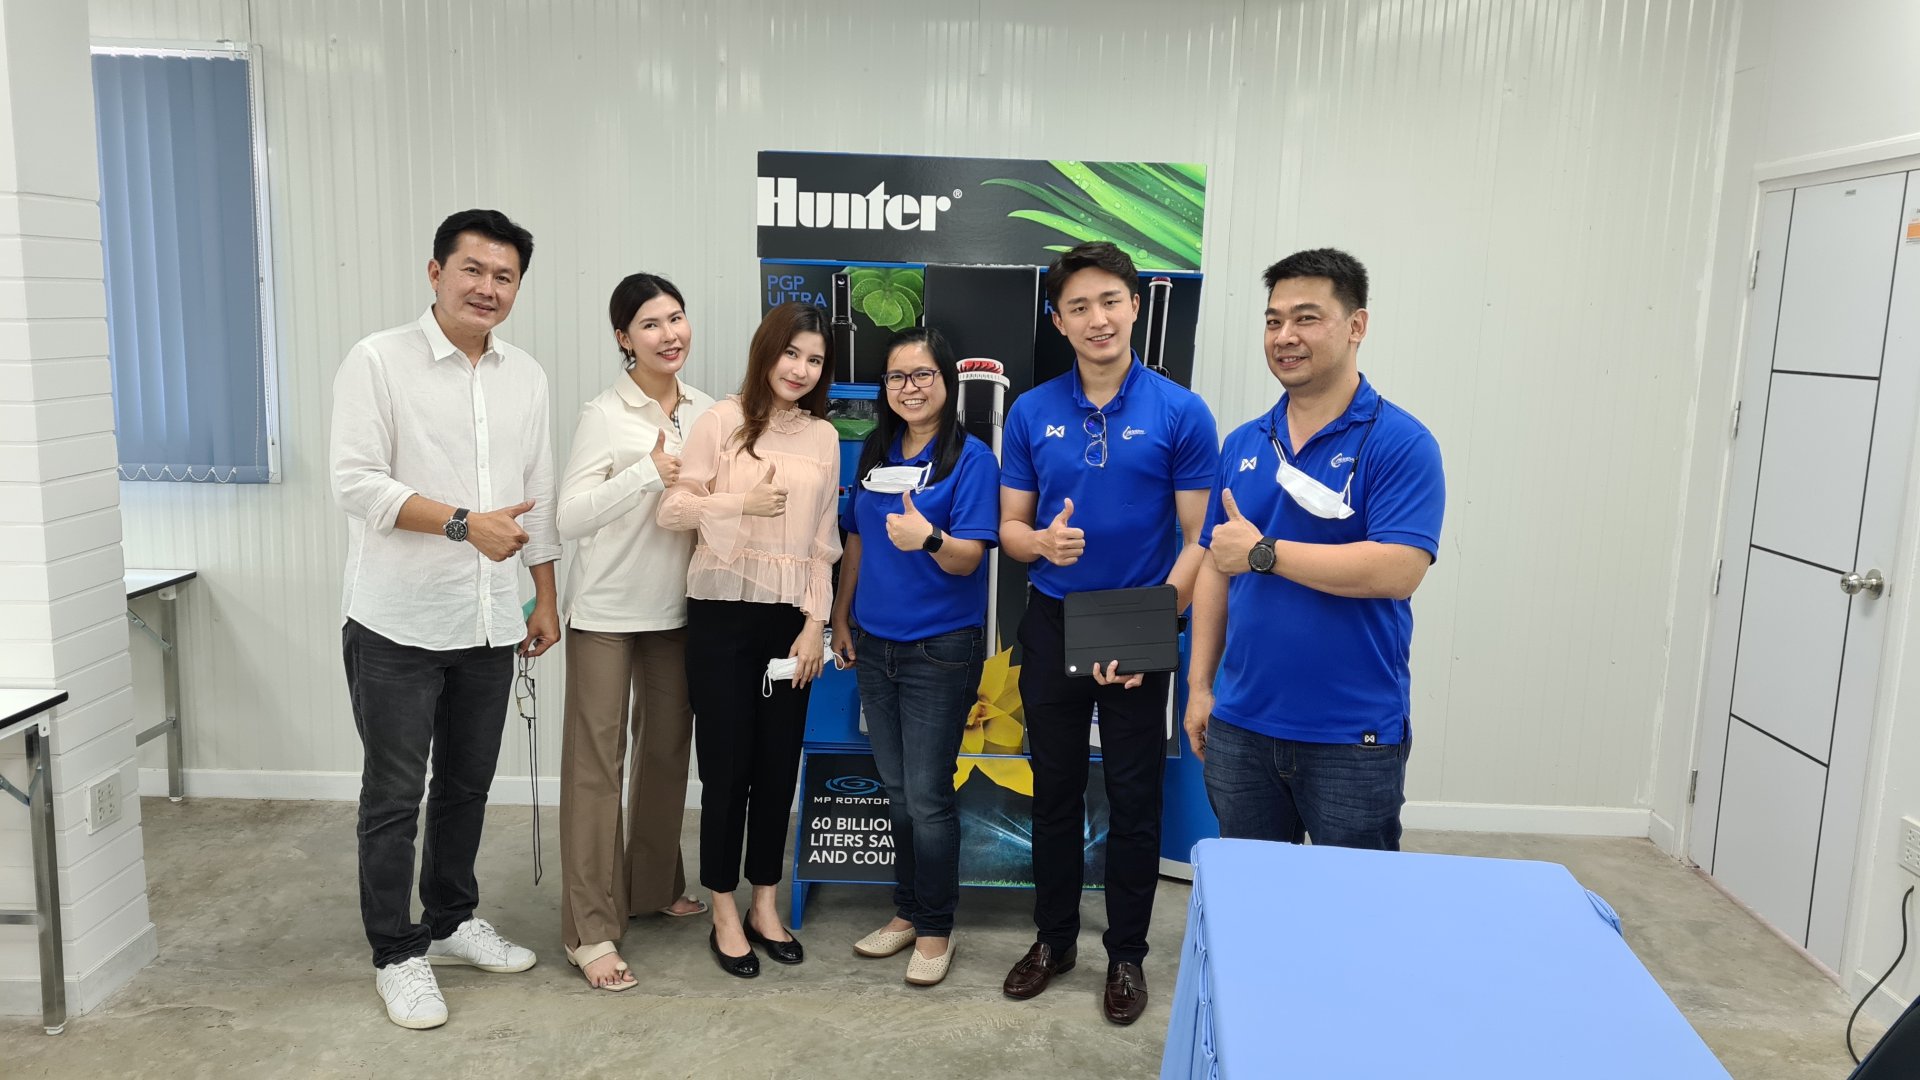 อบรมตัวแทนกับทางคู่ค้า Hunter (Thailand) Co.,Ltd